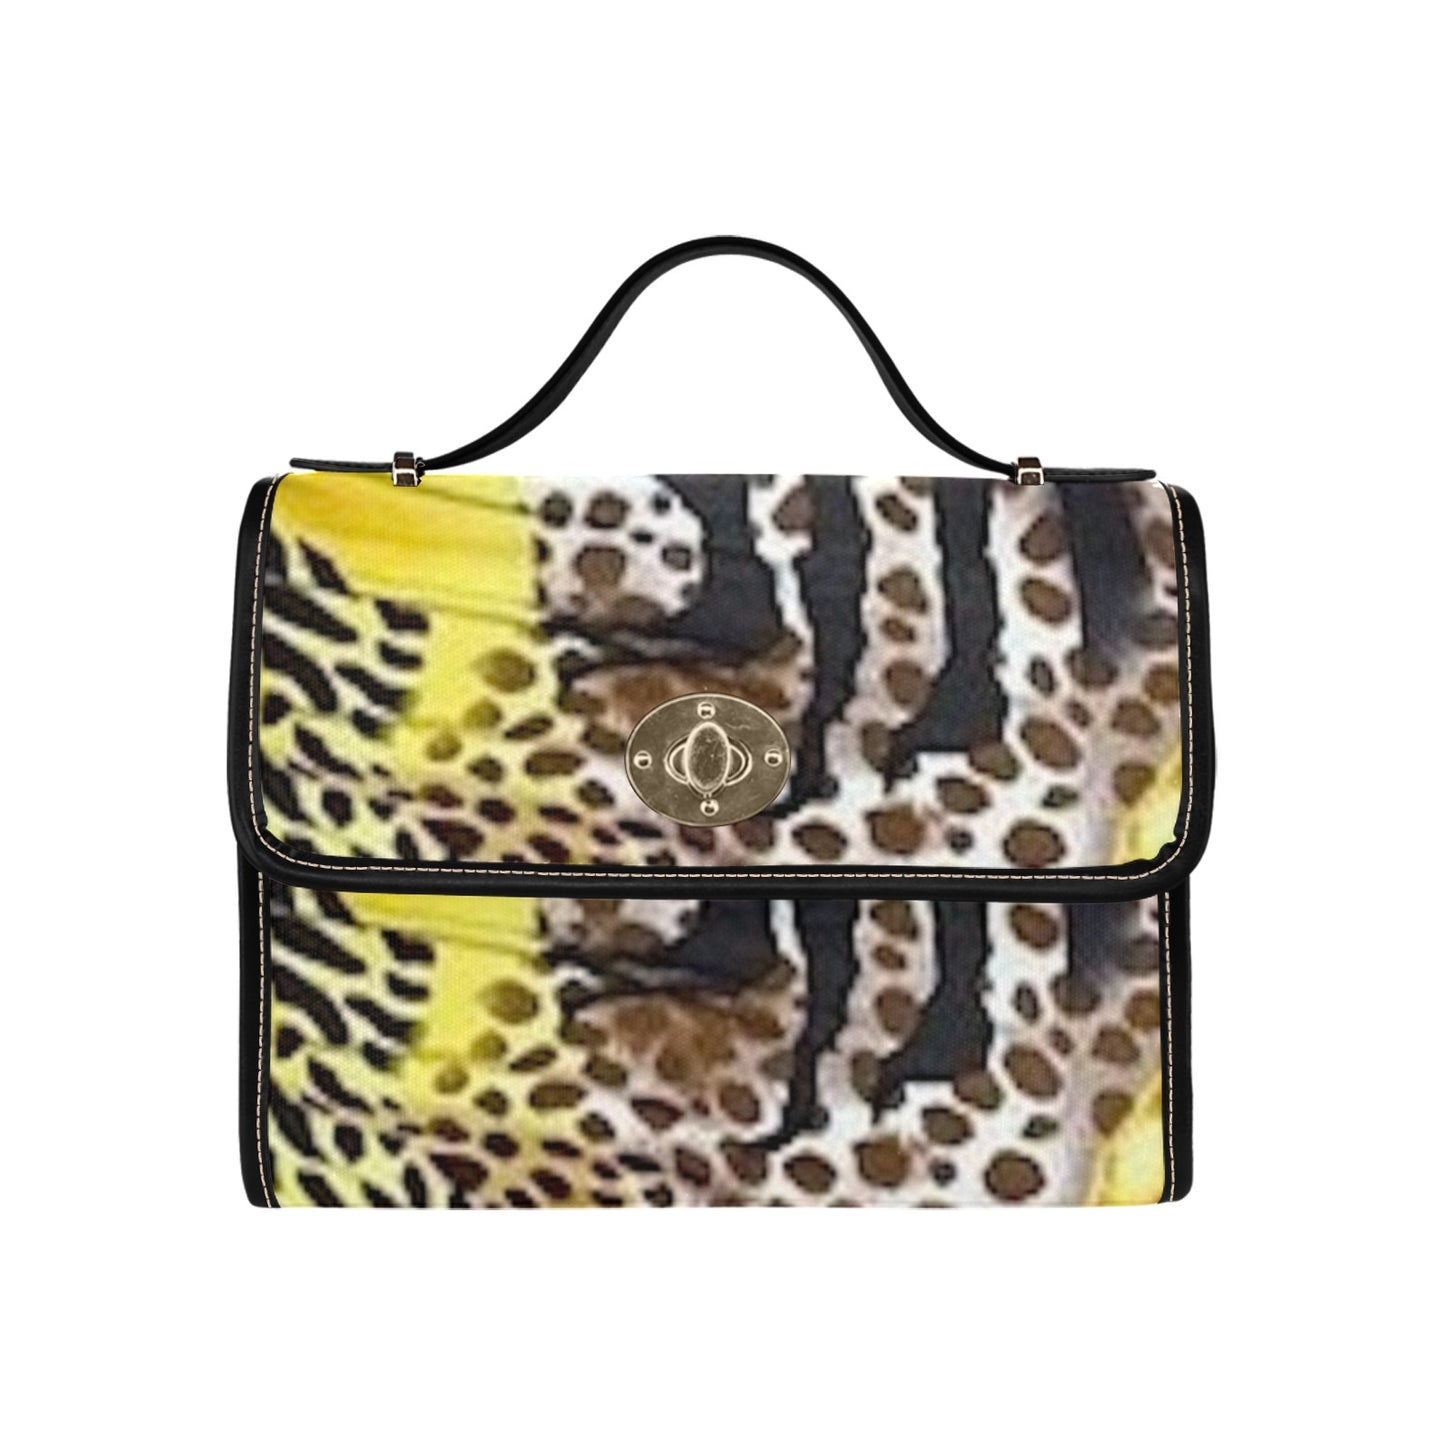 fz leopard print handbag all over print canvas bag (model 1641)(black)